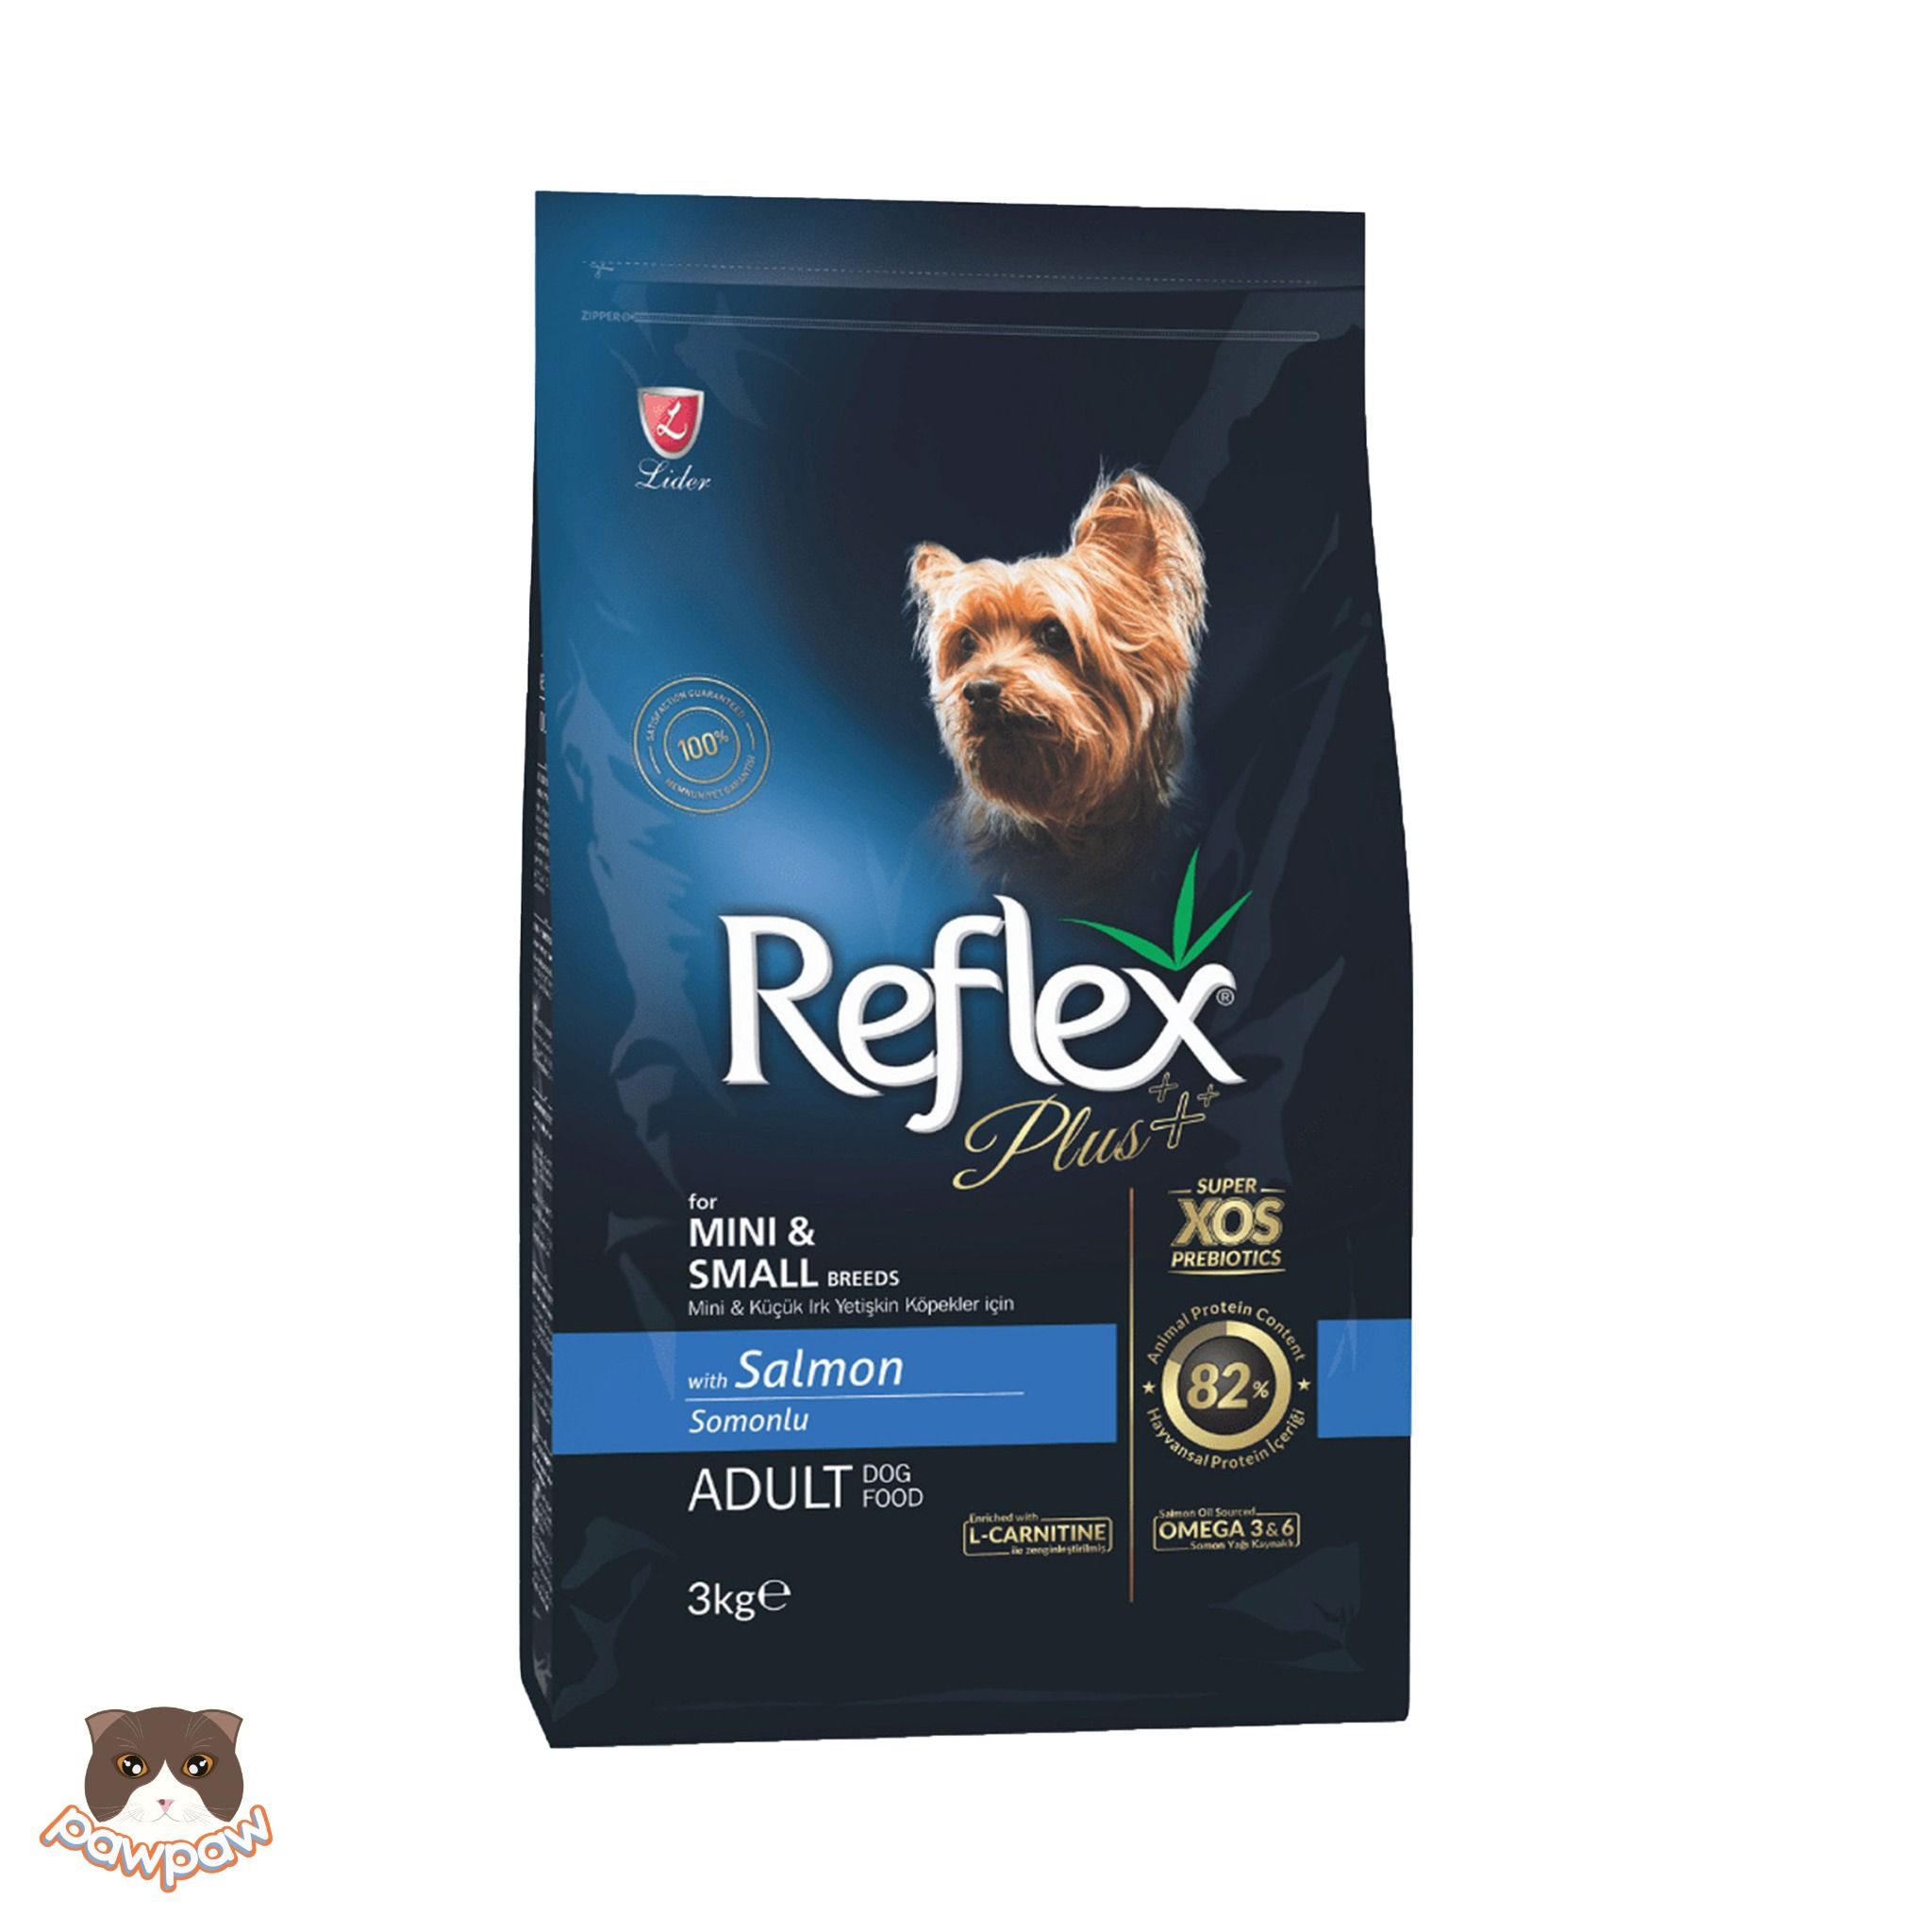  Hạt Reflex Plus Mini Small Breed Adult 3kg cho chó trưởng thành giống nhỏ 